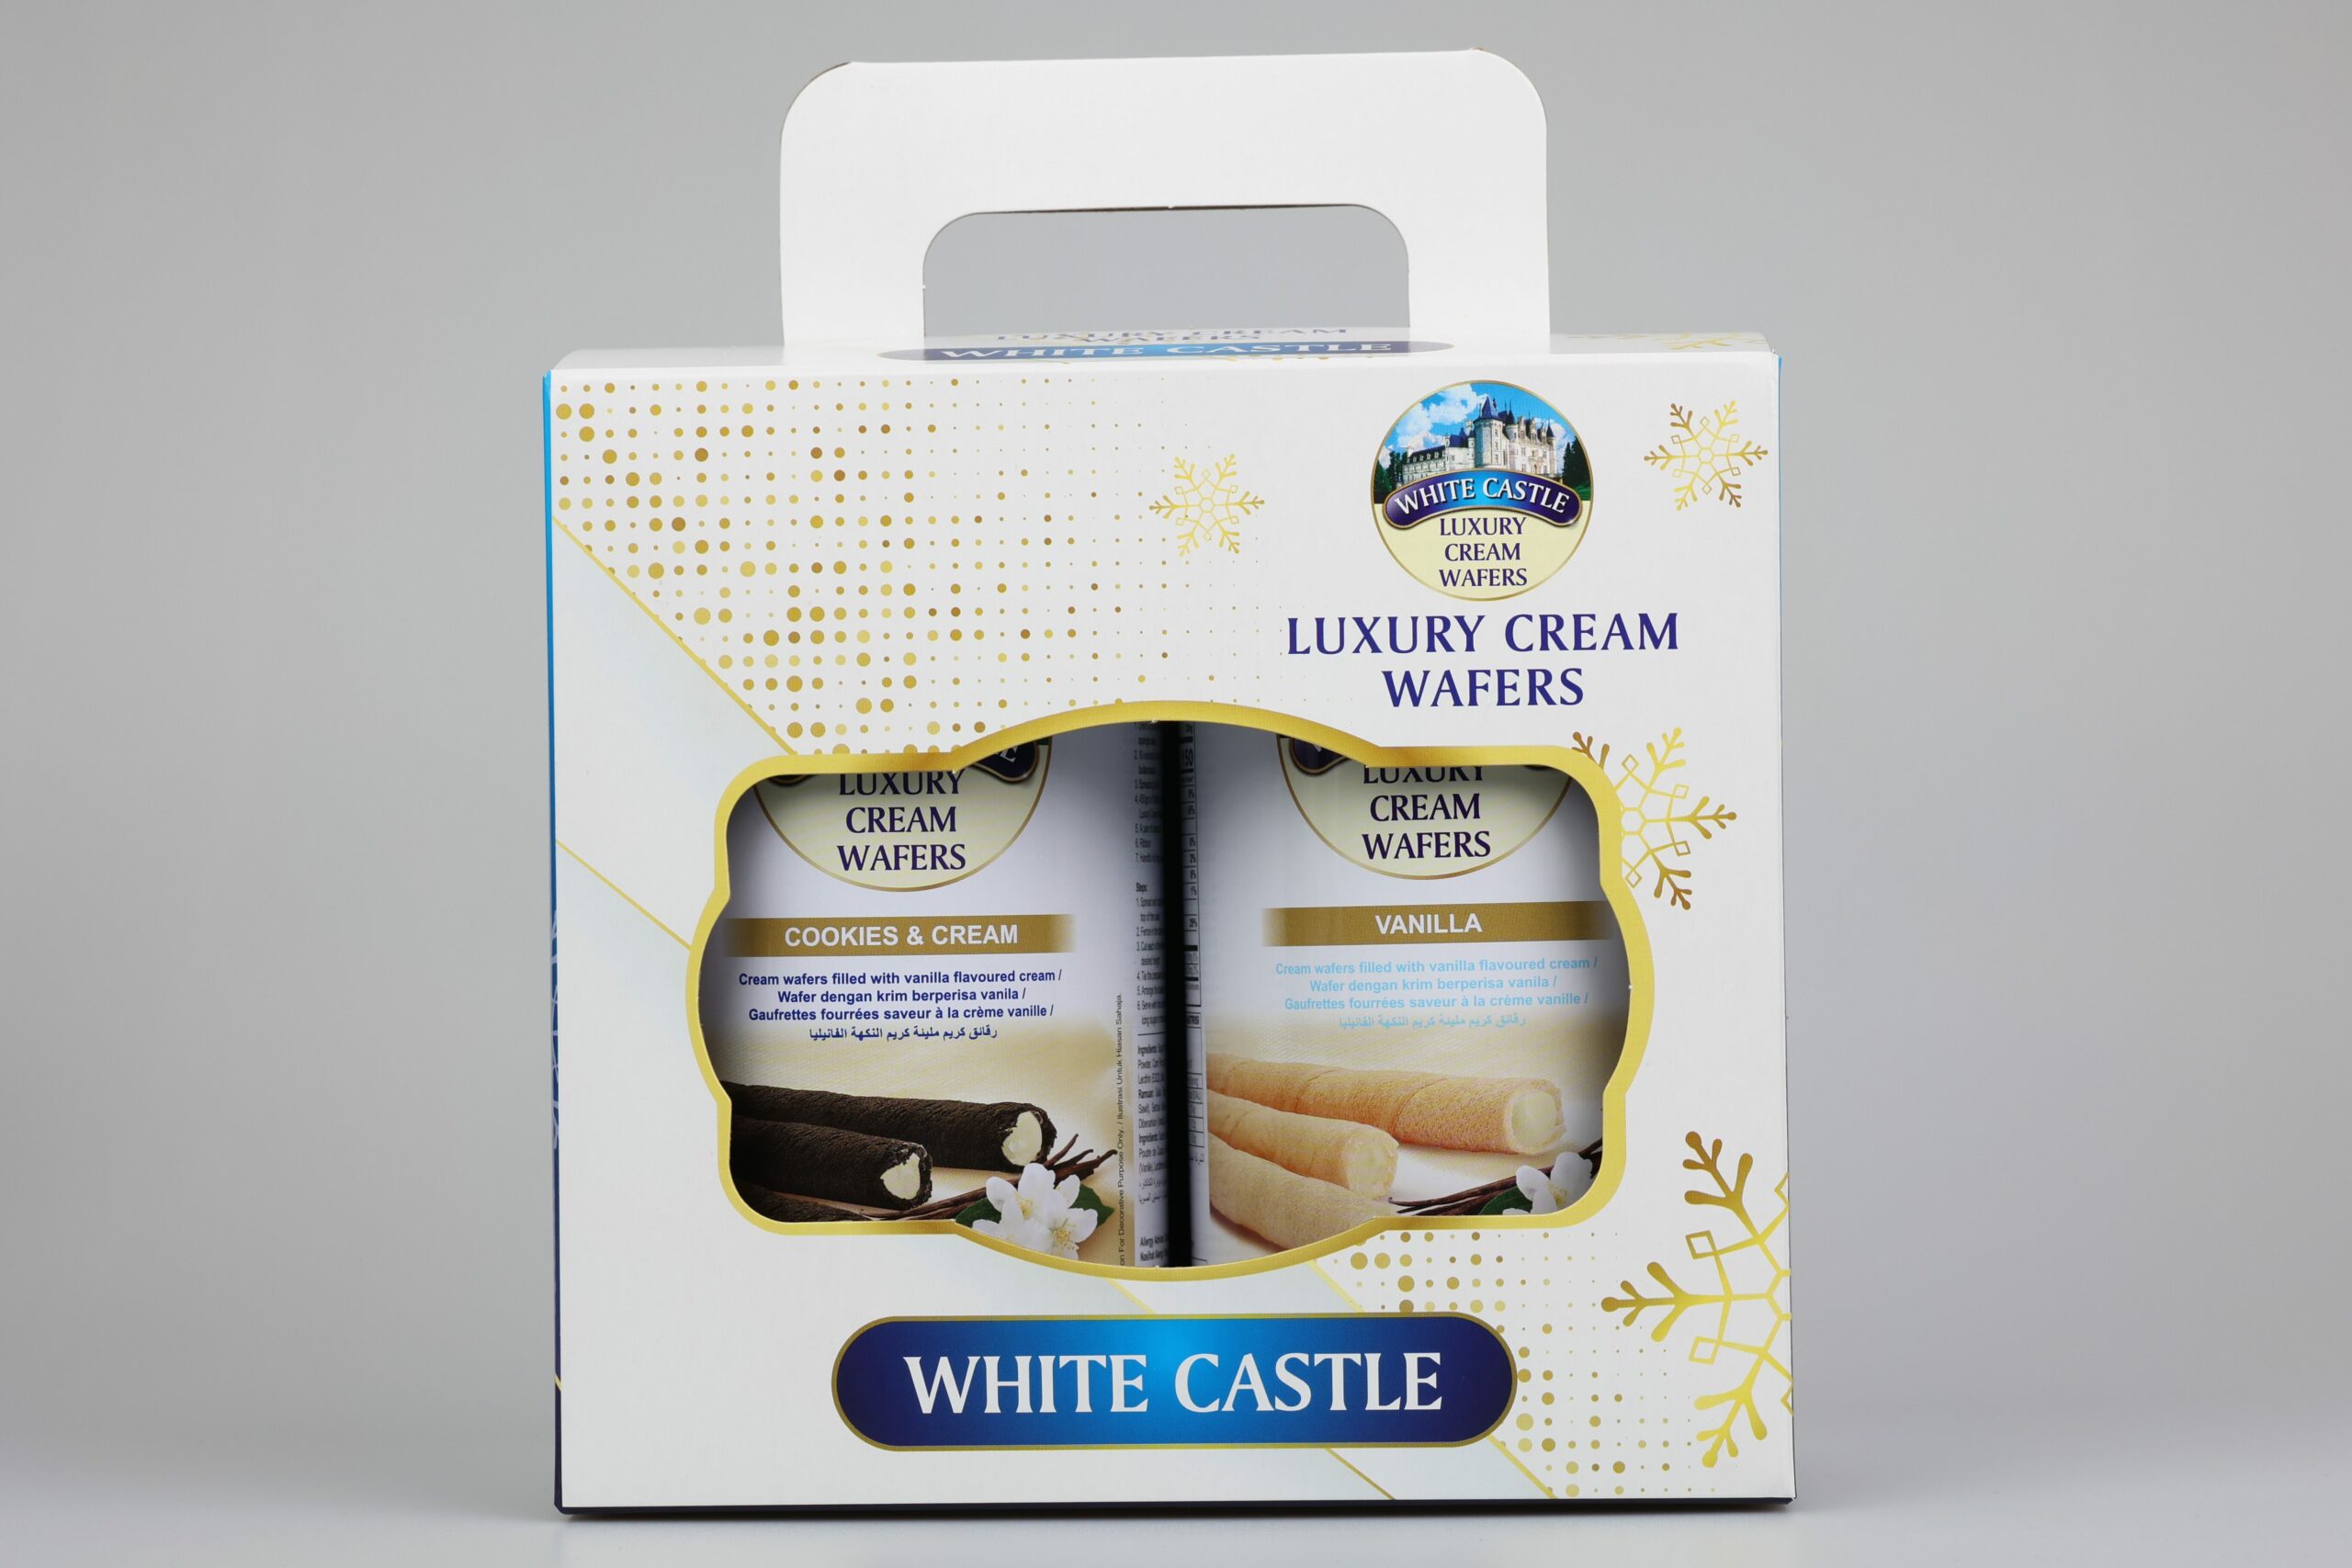 “White castle” เวเฟอร์และคุ้กกี้พระราชวัง แบรนด์ดังในตำนานจากมาเลเซีย พร้อมเสิรฟ์ที่ไทยแล้ว